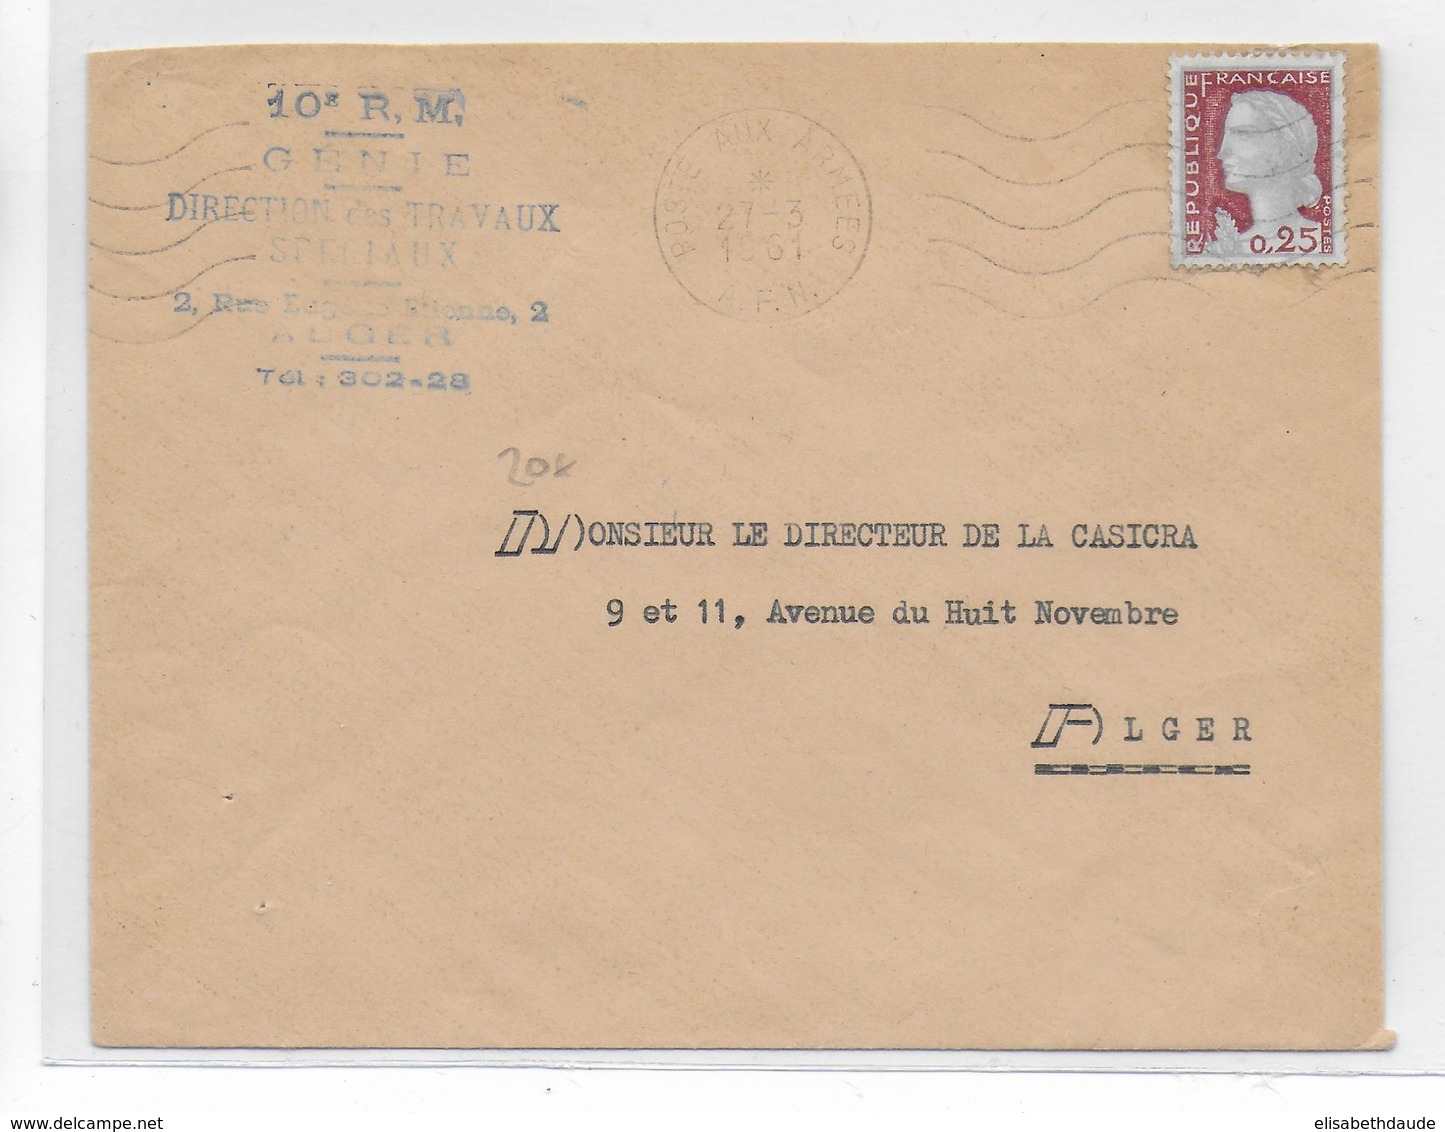 GUERRE D'ALGERIE - 1961 - DECARIS Sur ENVELOPPE Des ARMEES (10° R.M - GENIE) à ALGER - Guerre D'Algérie